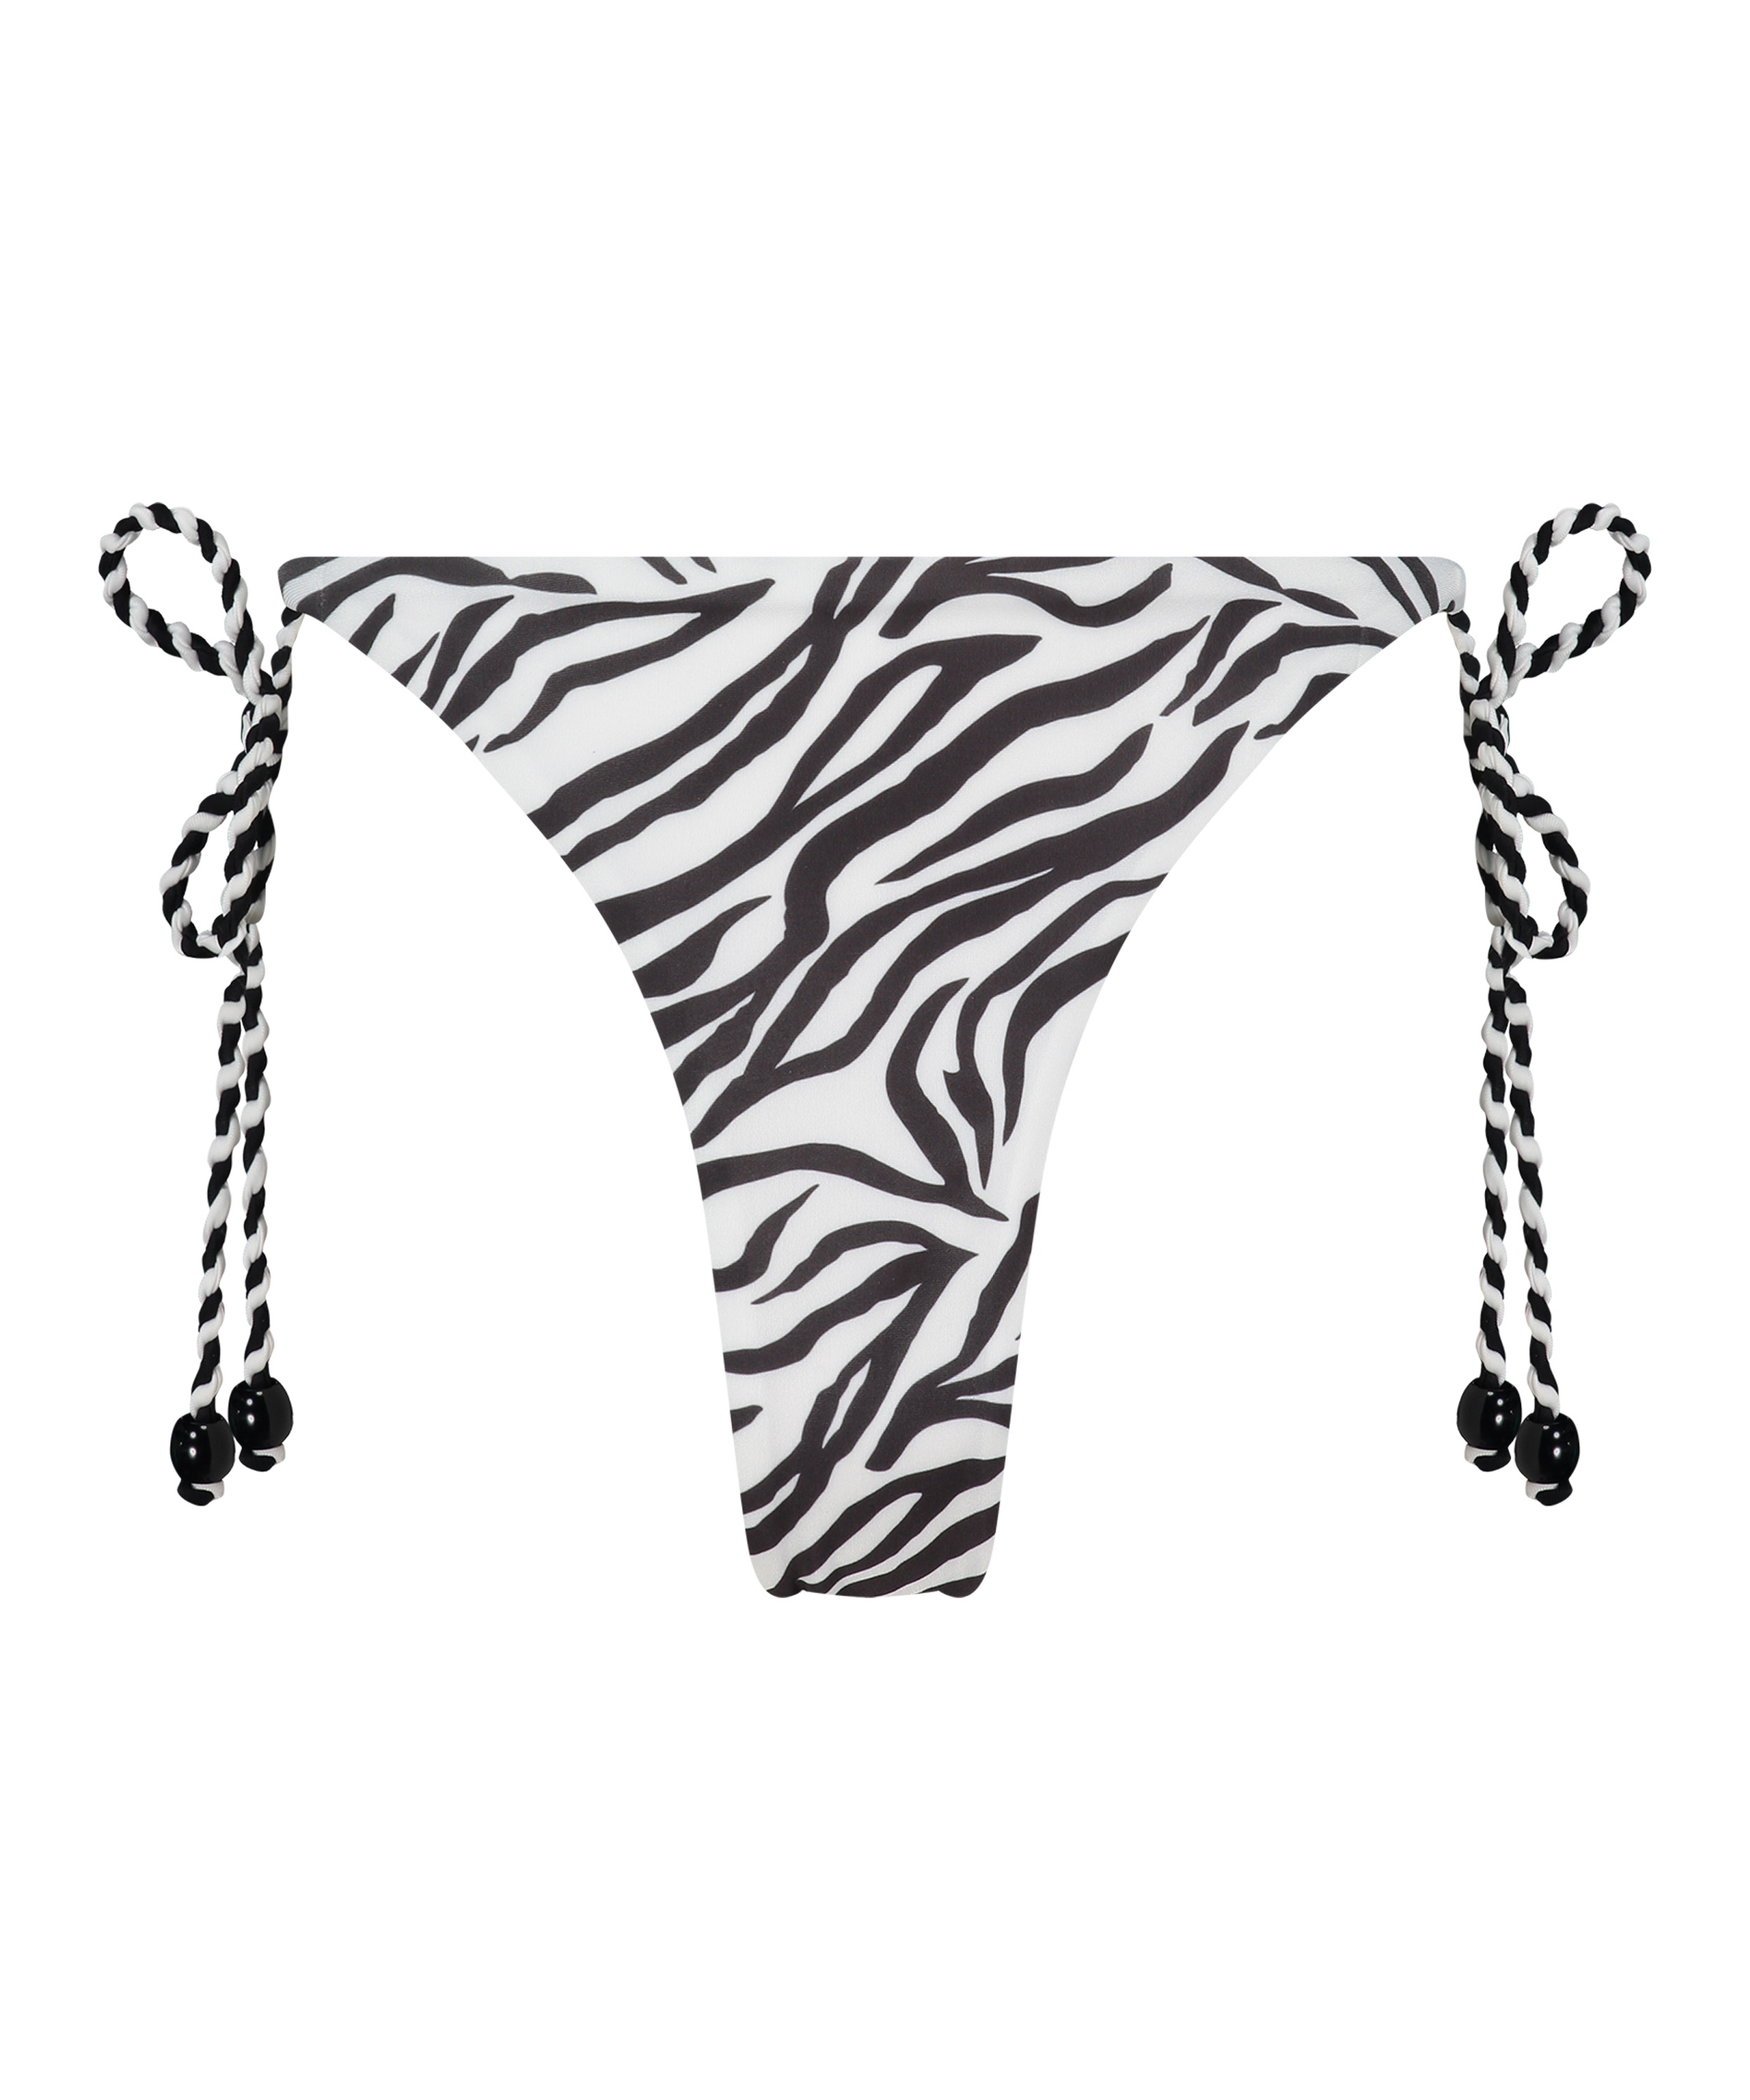 Doha Zebra Cheeky Tanga Bikini Bottoms, White, main